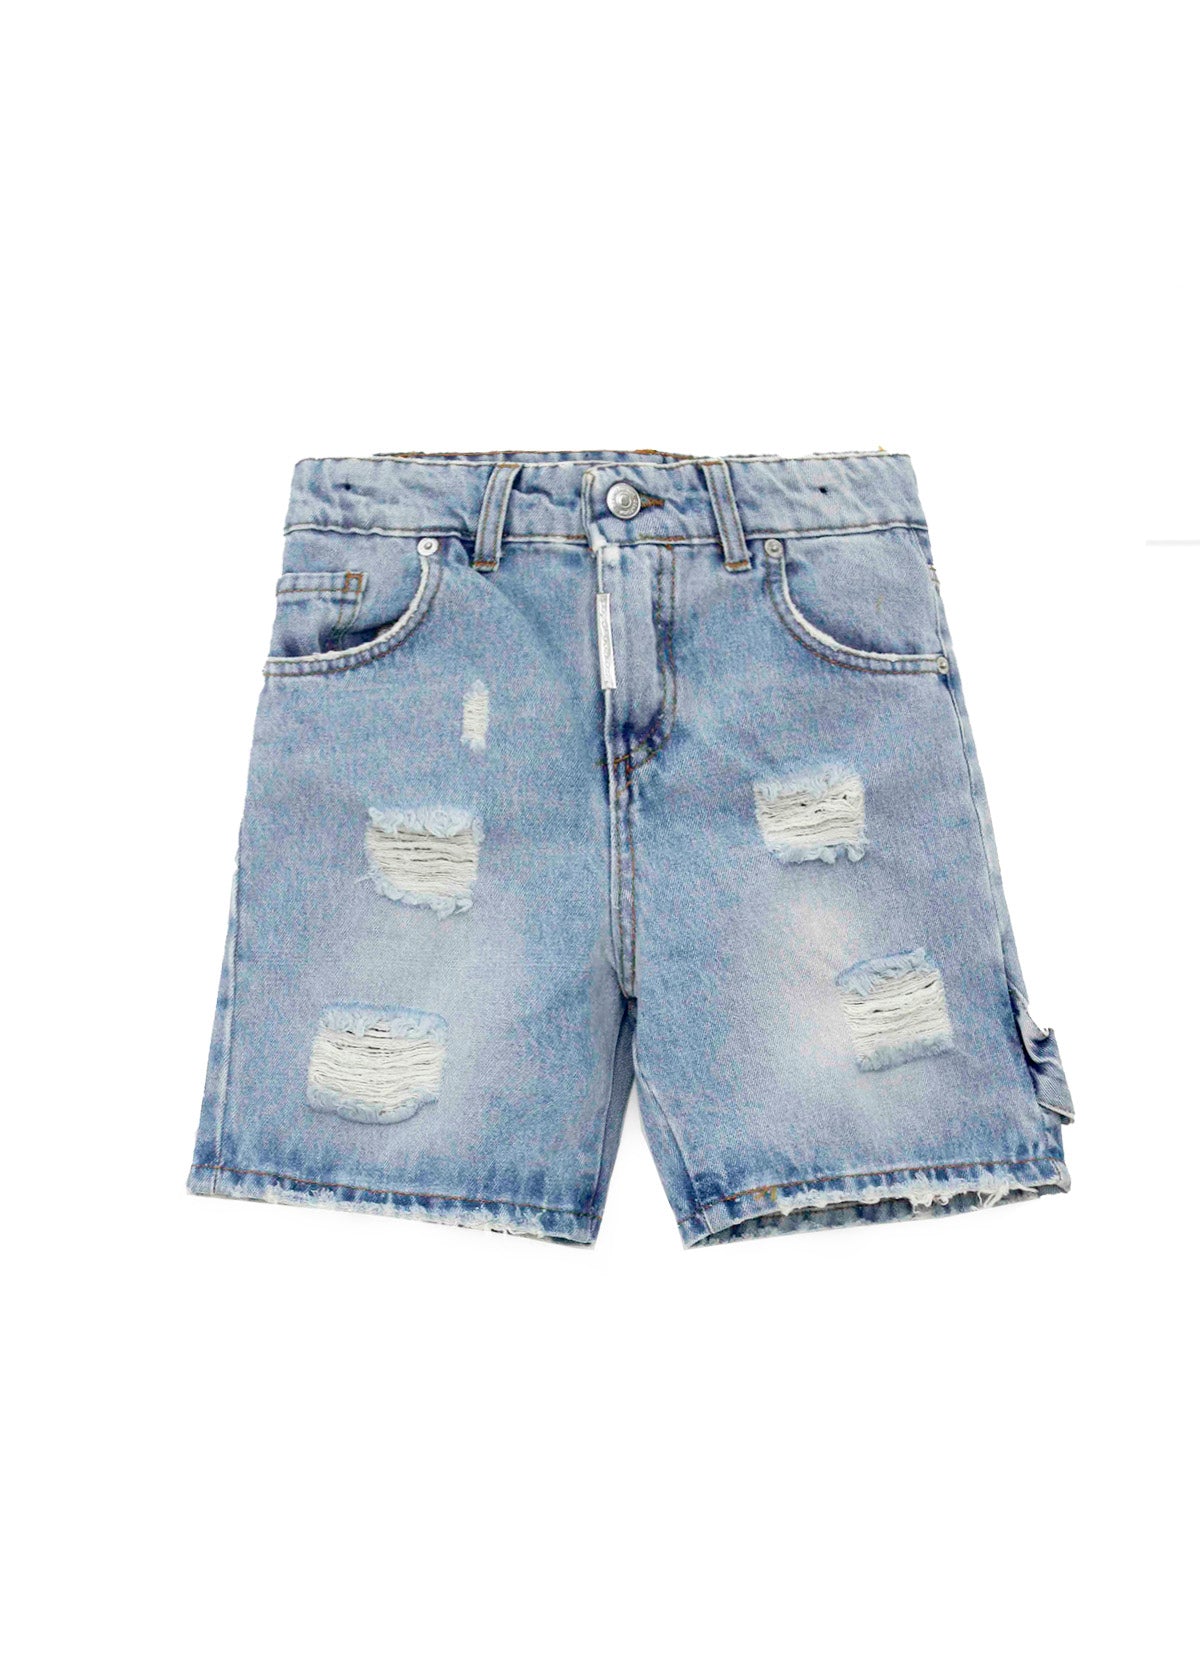 DO NOT CONFORM Short Jeans con Stappi per Bambini (FRONTE)